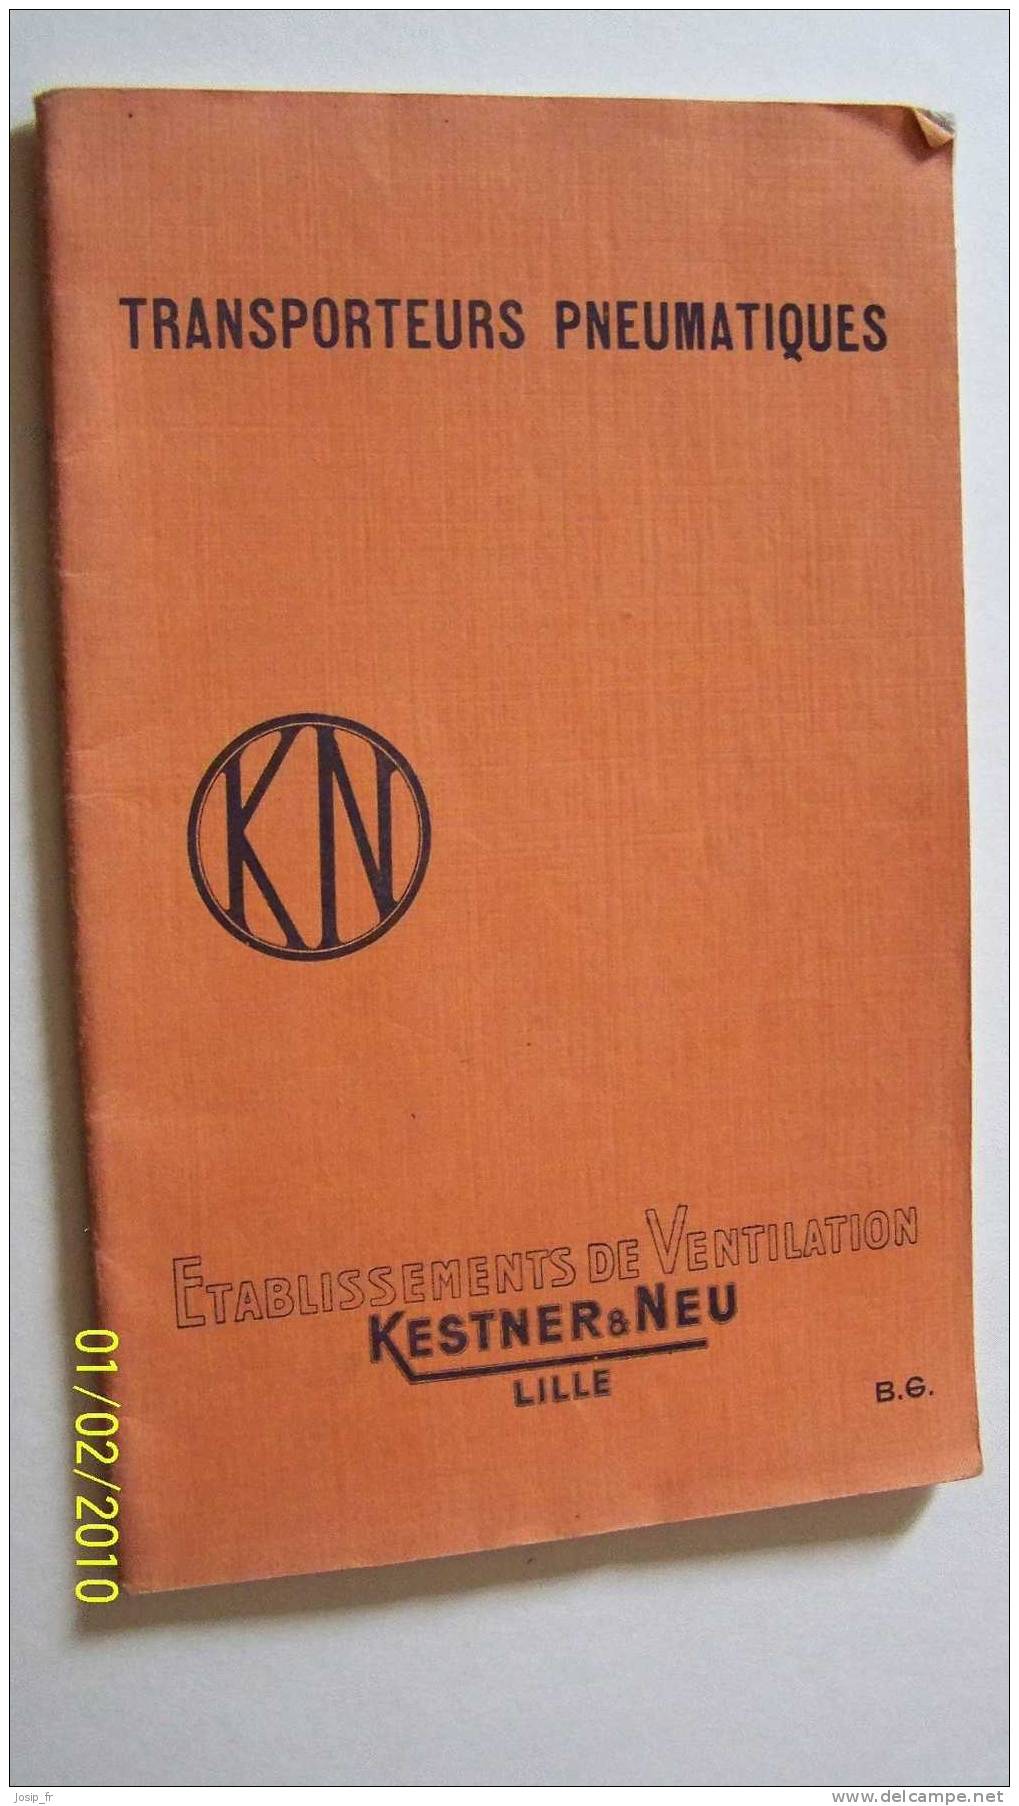 Catalogue Transporteurs Pneumatiques Kestner &Neu Lille - Picardie - Nord-Pas-de-Calais